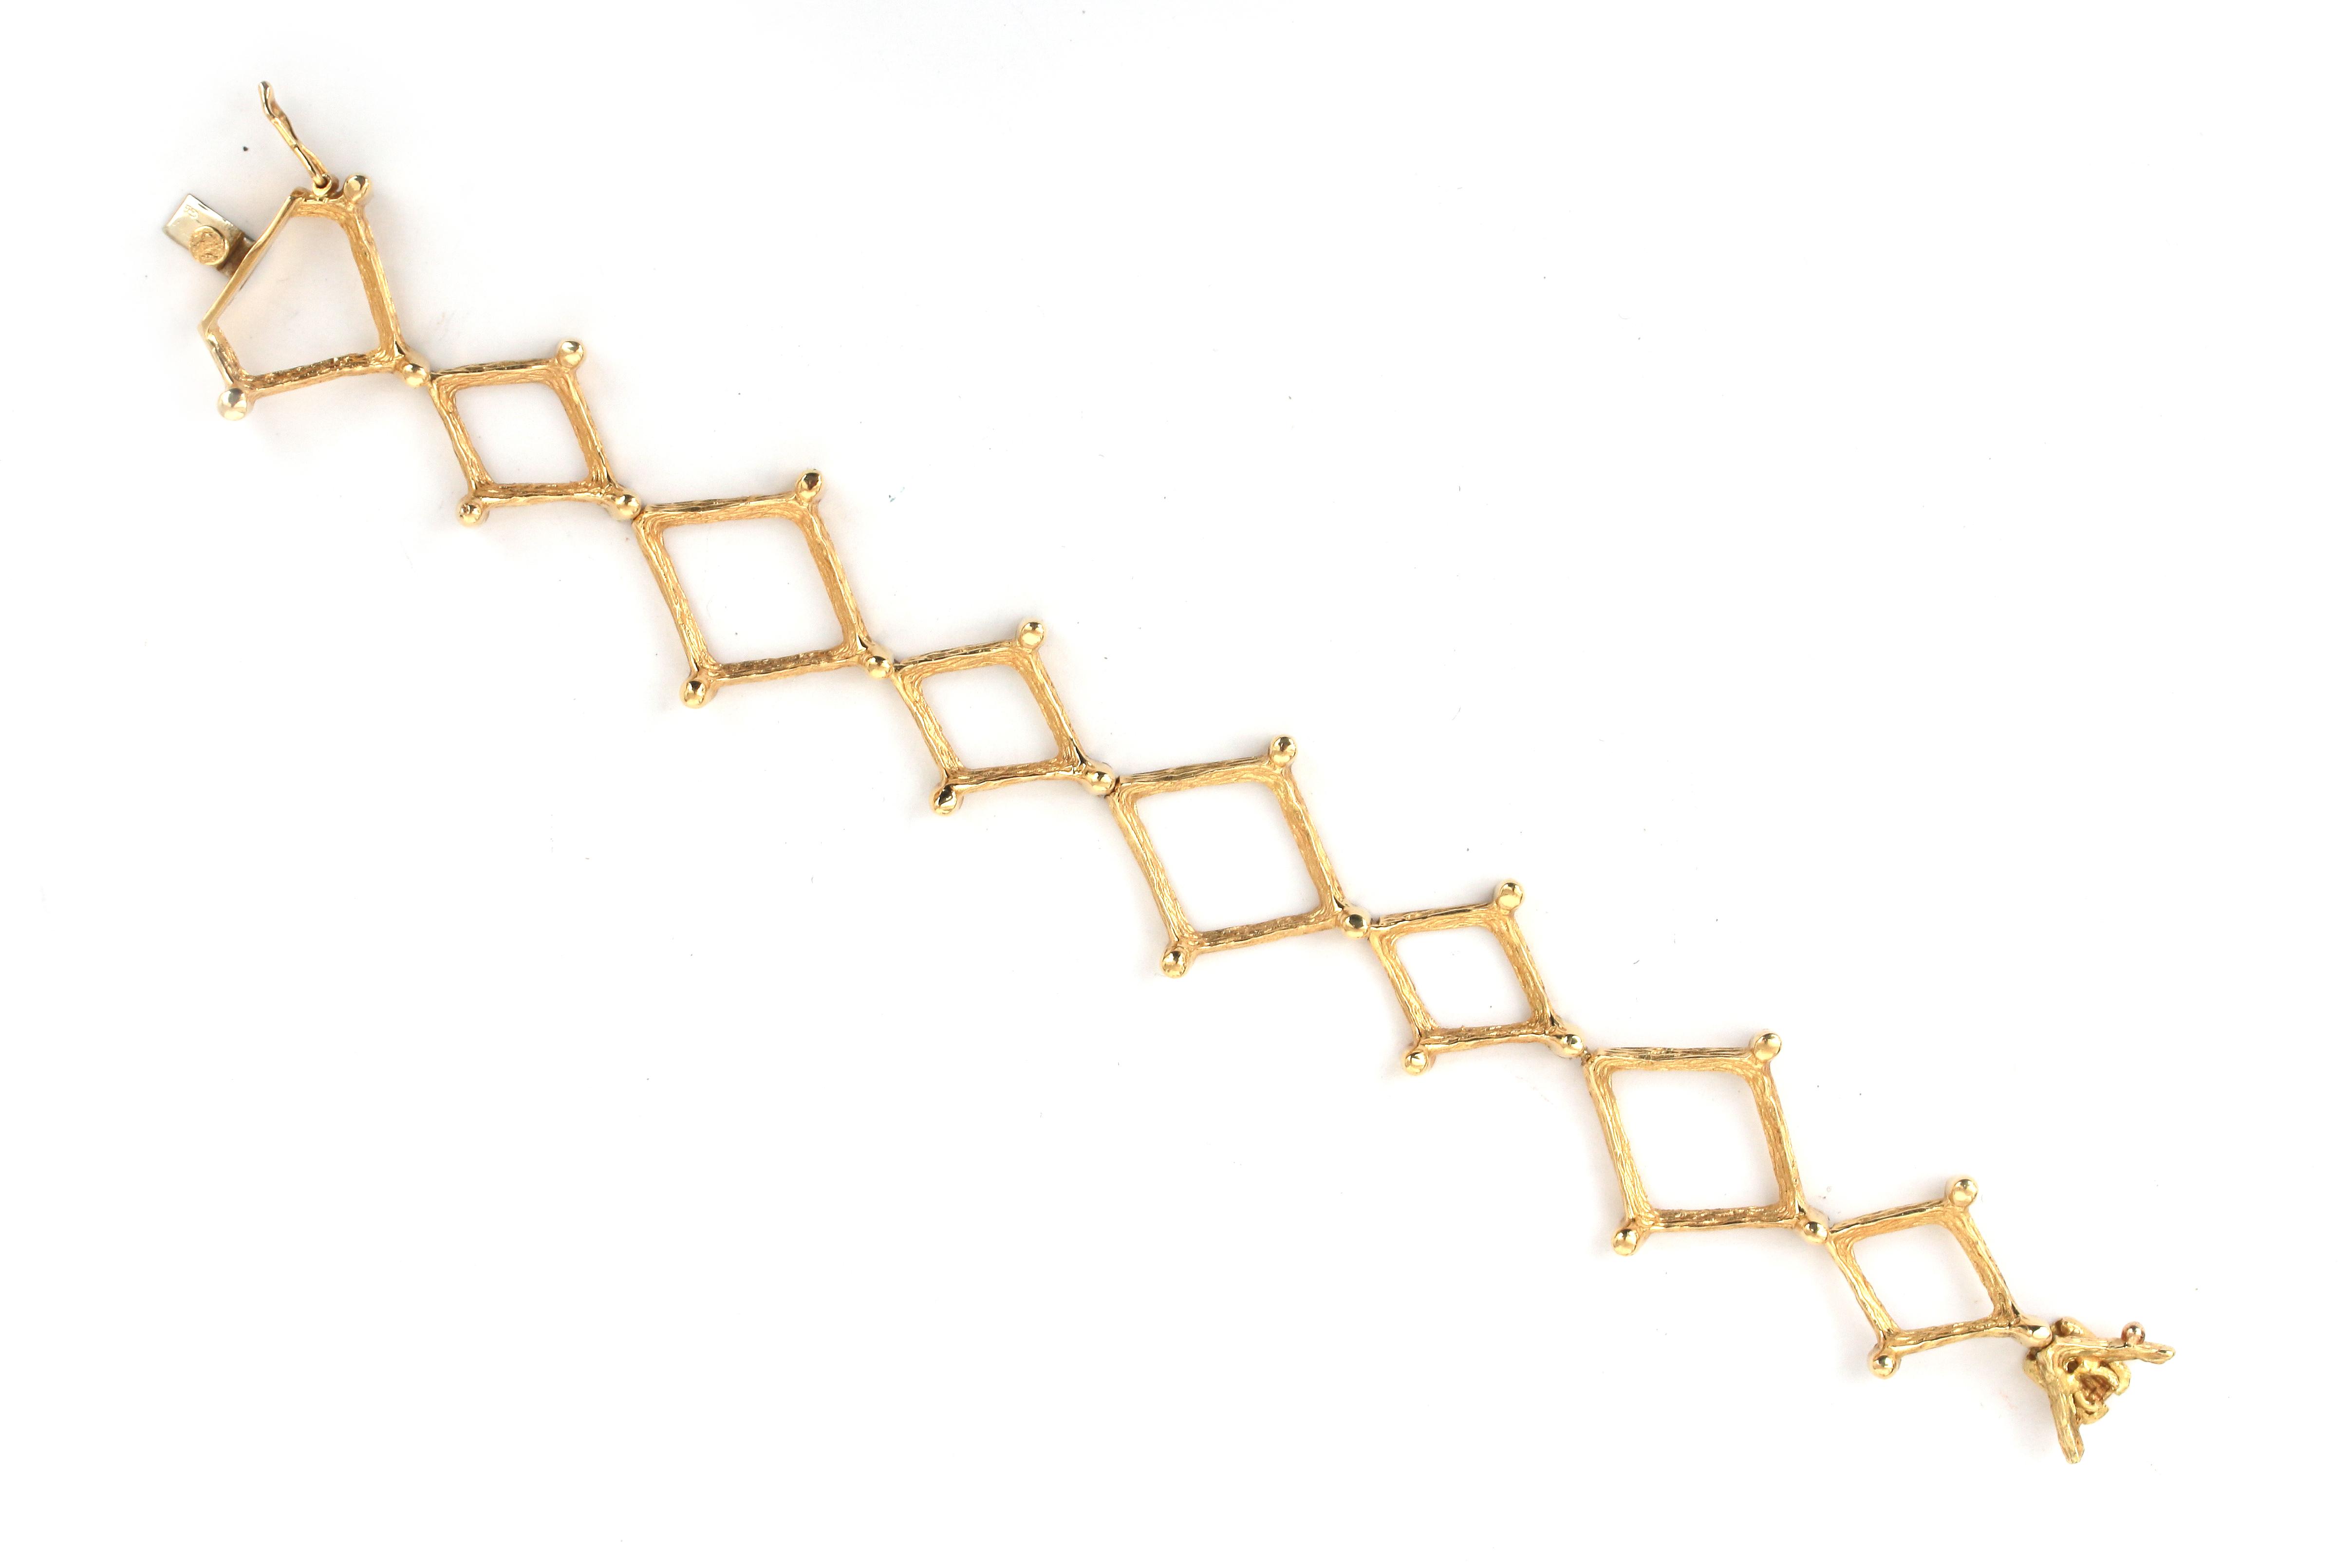 An 18 karat gold link bracelet, ca. 1960-'70 - Image 2 of 2